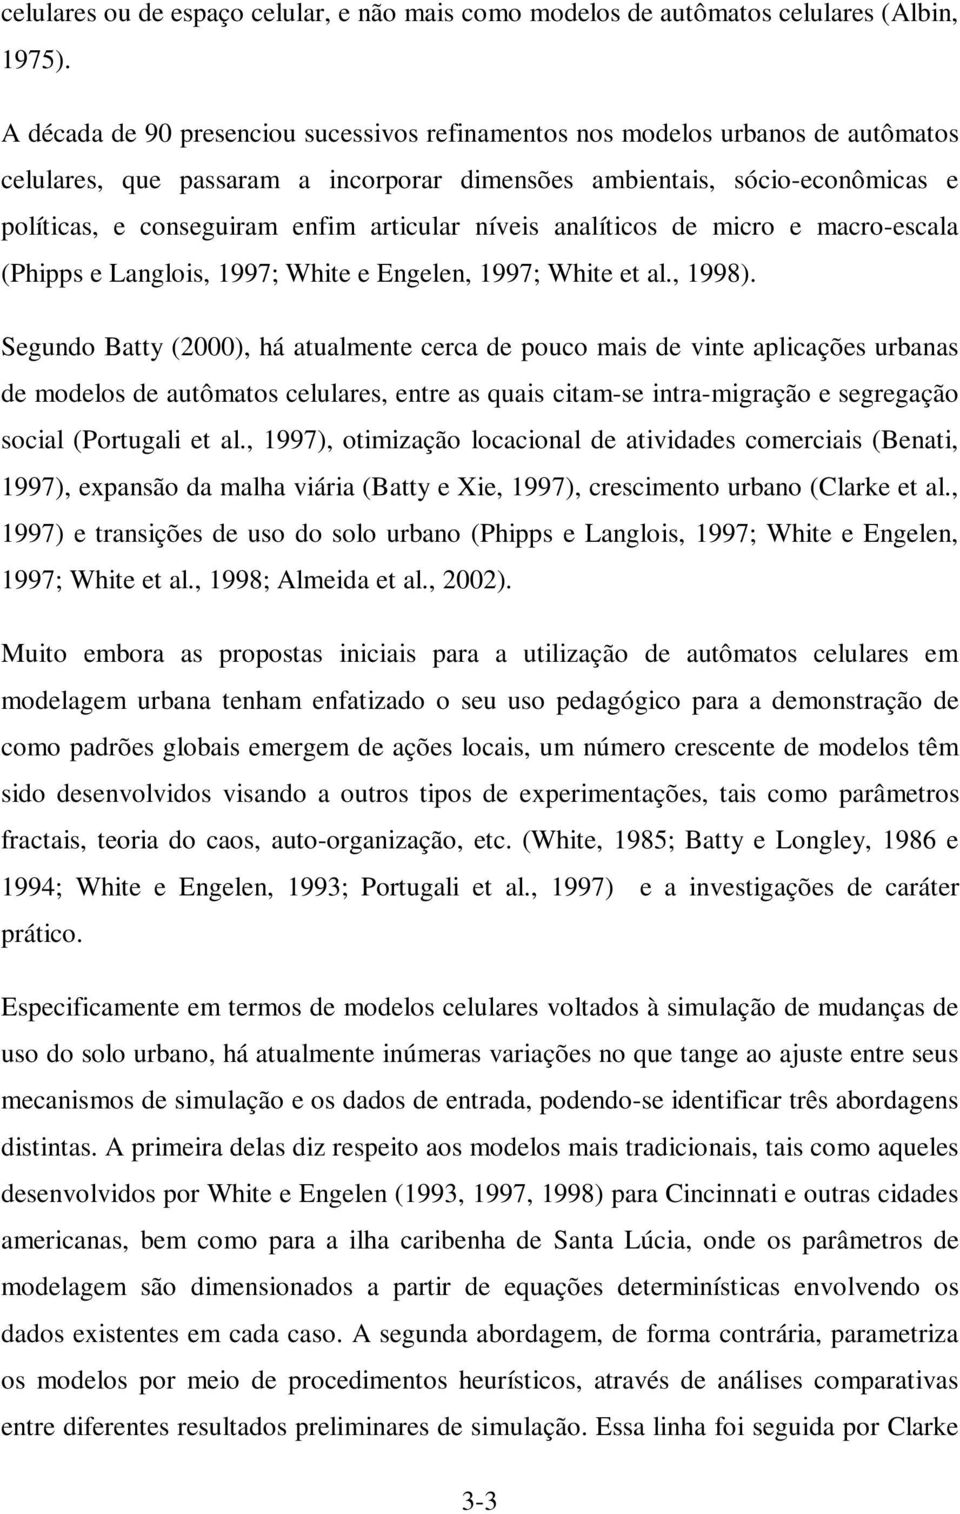 níveis analíticos de micro e macro-escala hipps e Langlois, 1997; White e Engelen, 1997; White et al., 1998.